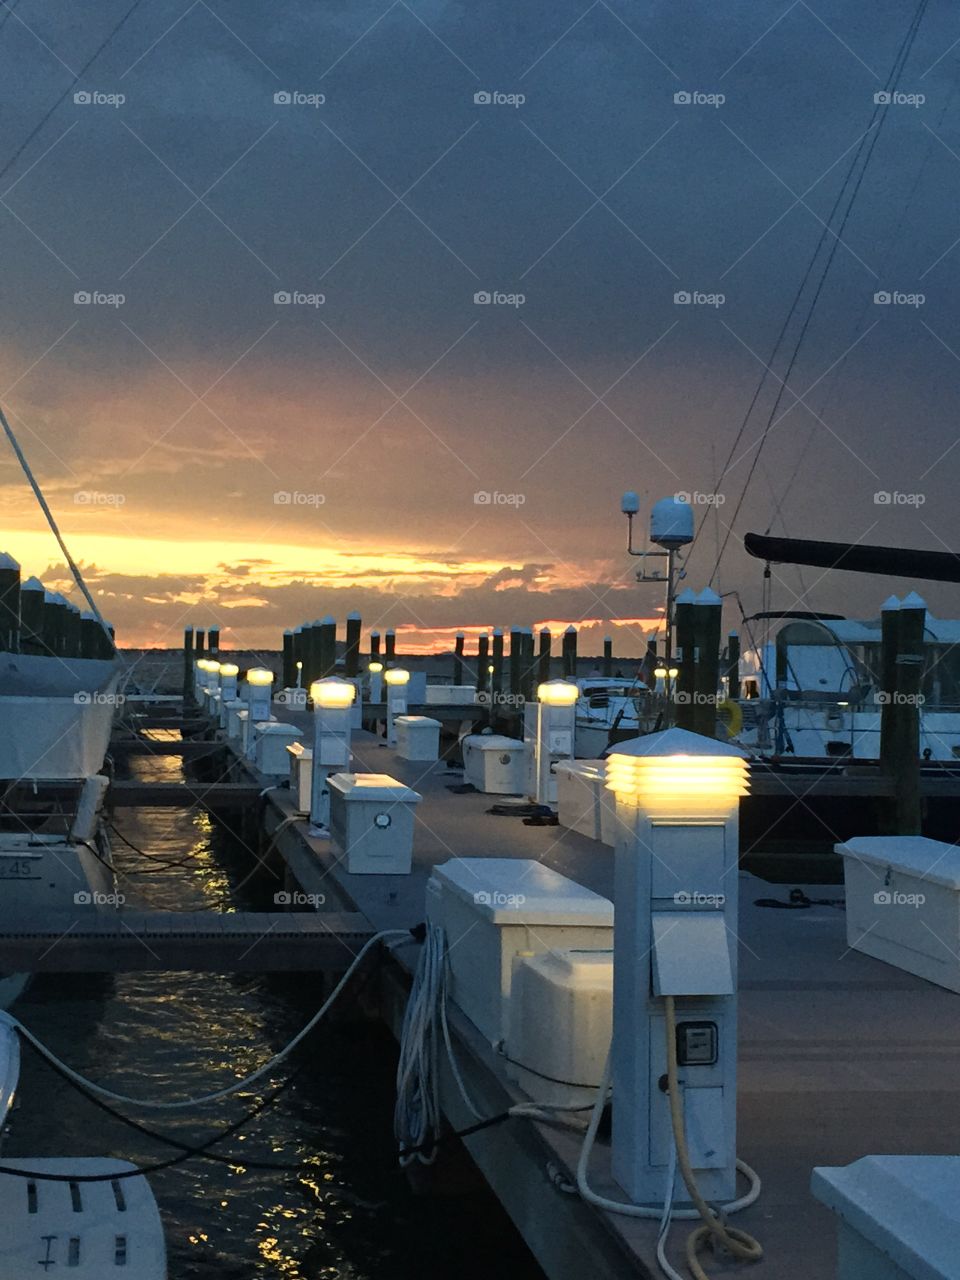 Sunset. Beautiful sunset with boats